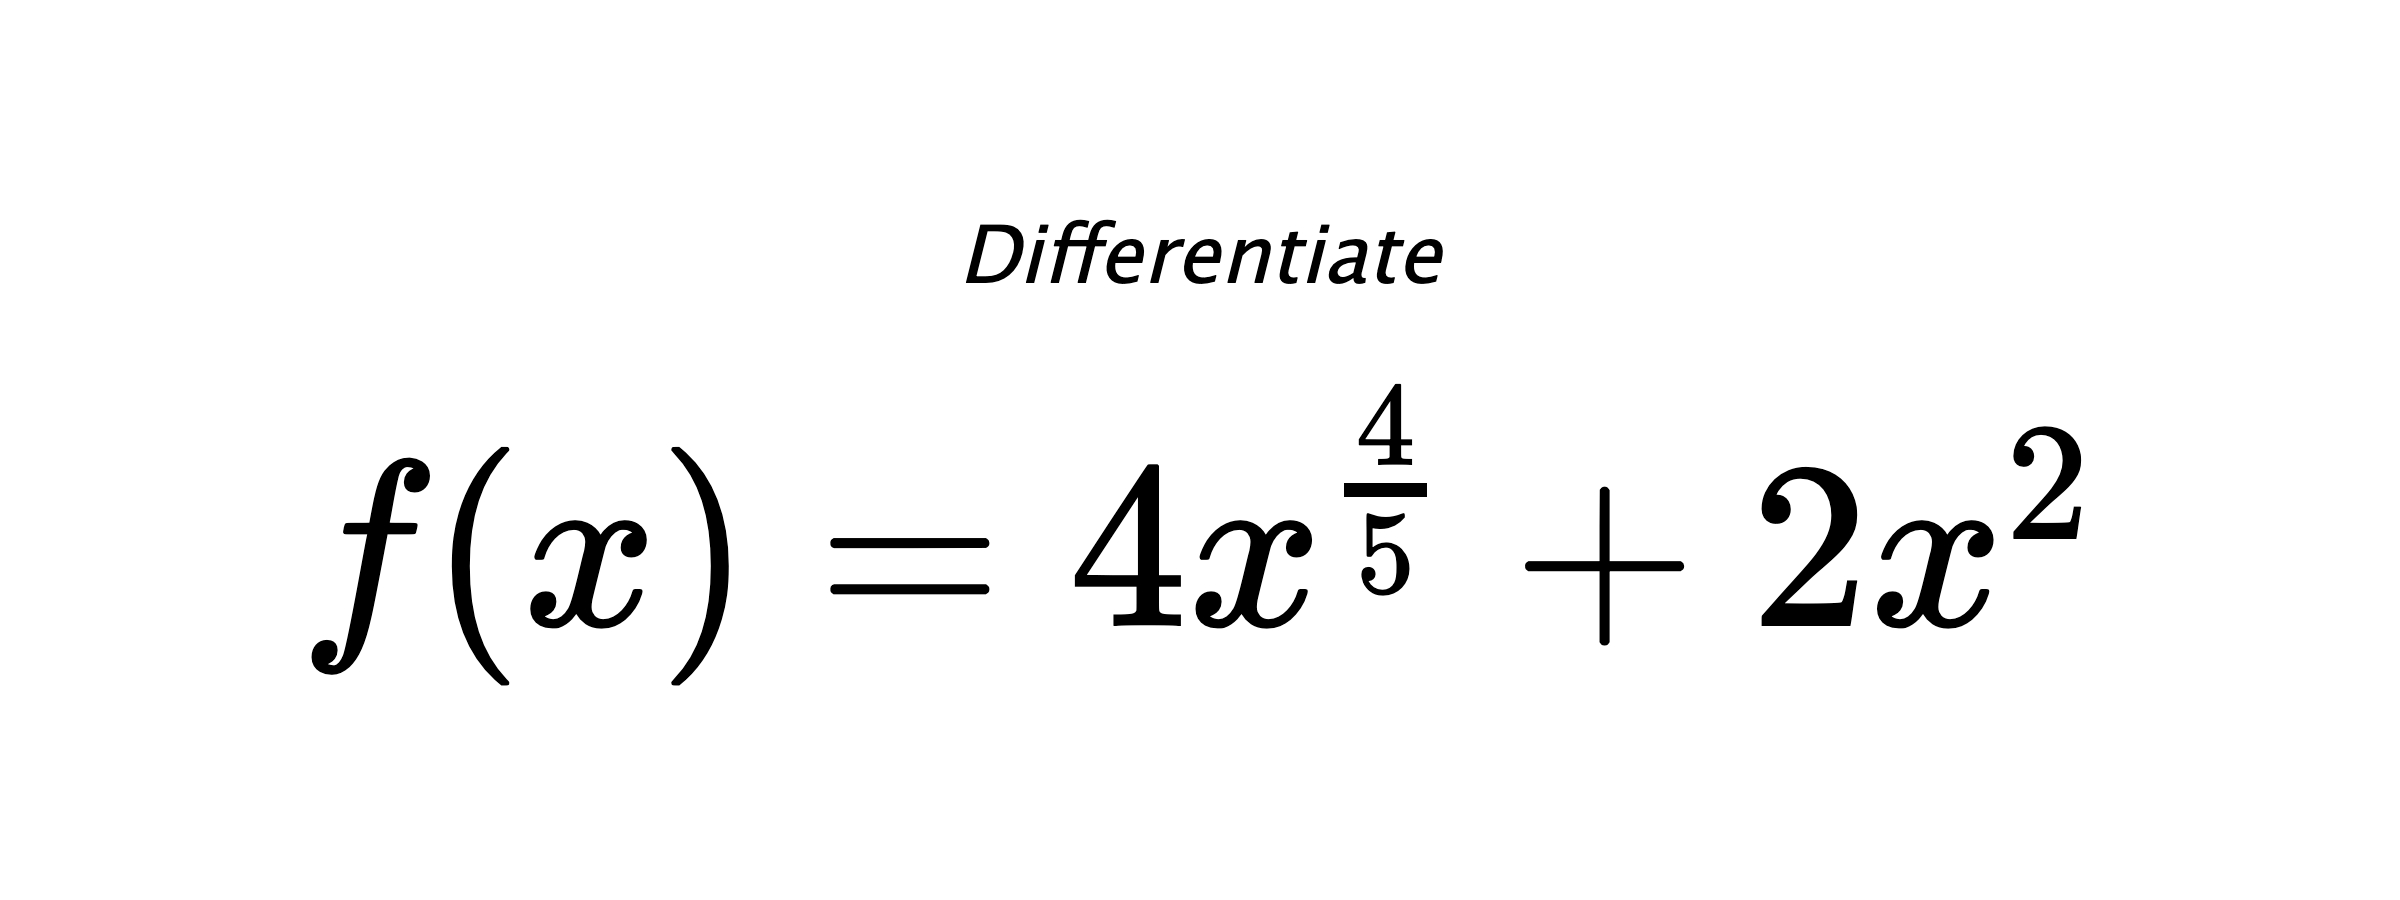 Differentiate $ f(x) = 4 x^{\frac{4}{5}} + 2 x^{2} $